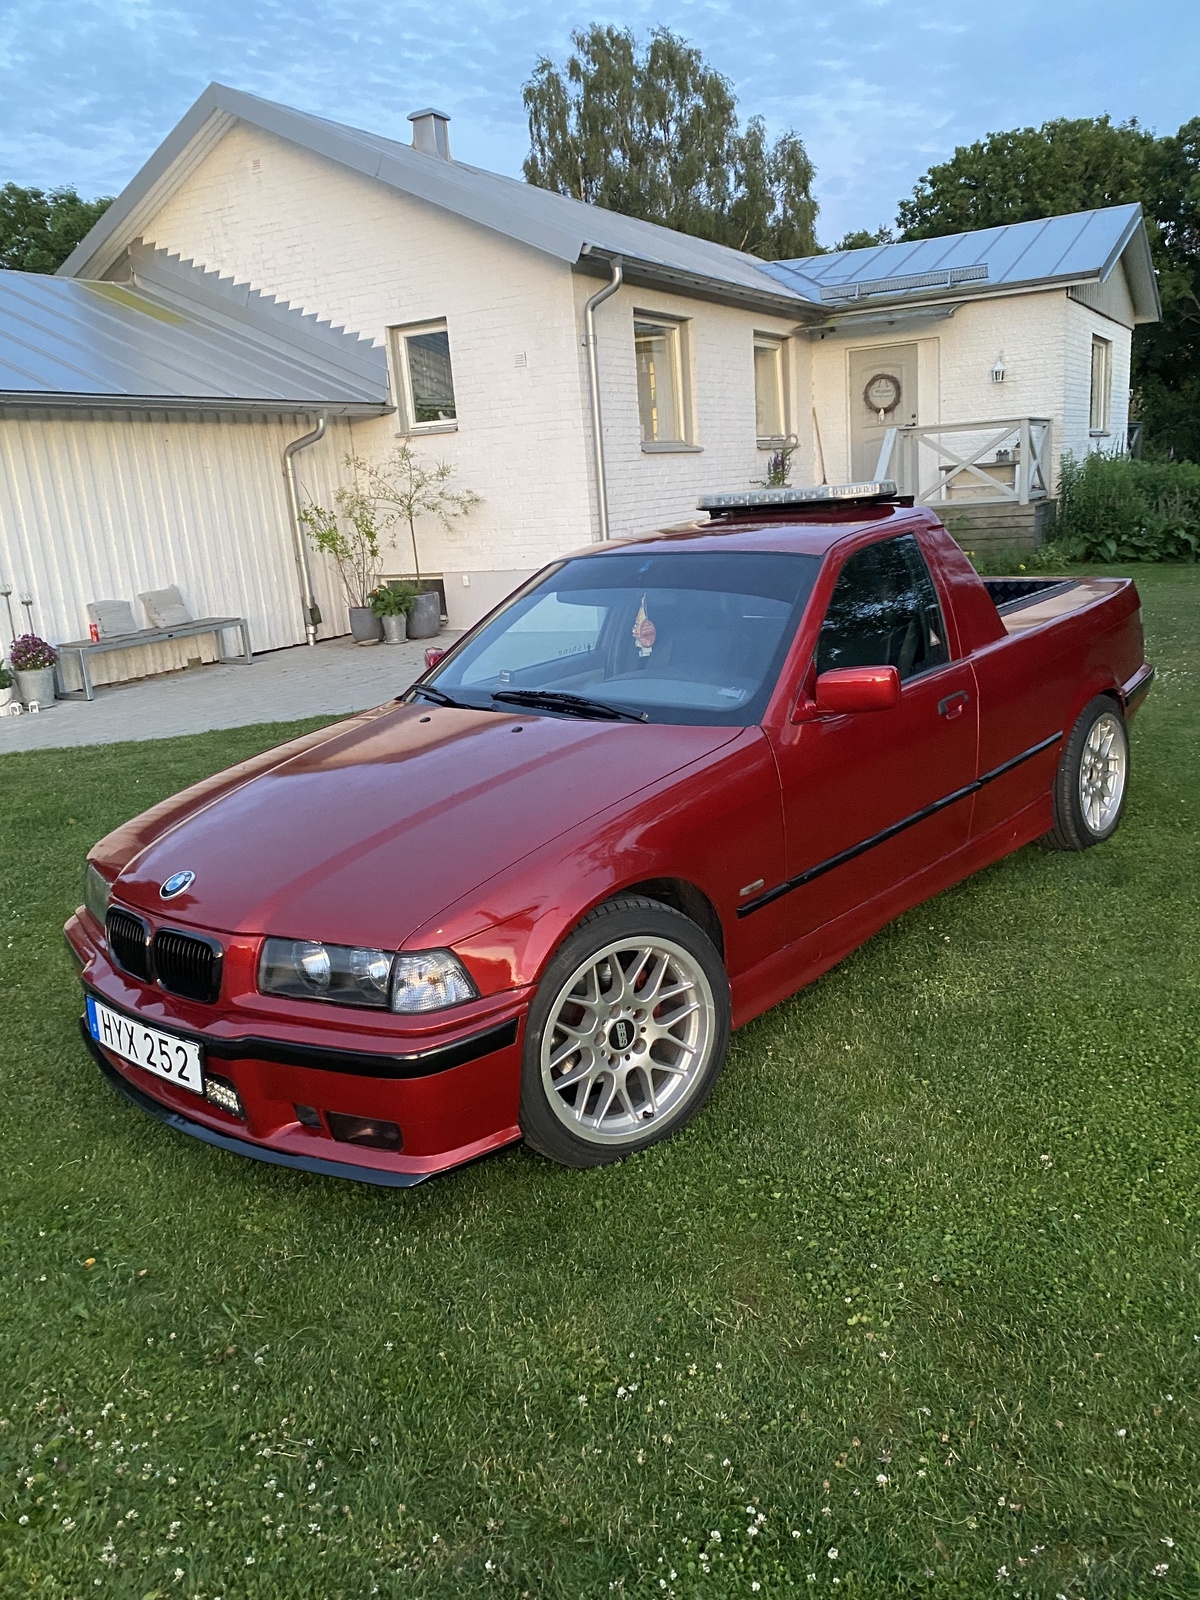 Julius Nordström i Huaröd har en BMW E36 från 1999. Den har en Quick release, vilket betyder att man kan ta av ratten. Det sitter även ett minikylskåp mellan två 10-tums basar i ryggen bakom stolarna.